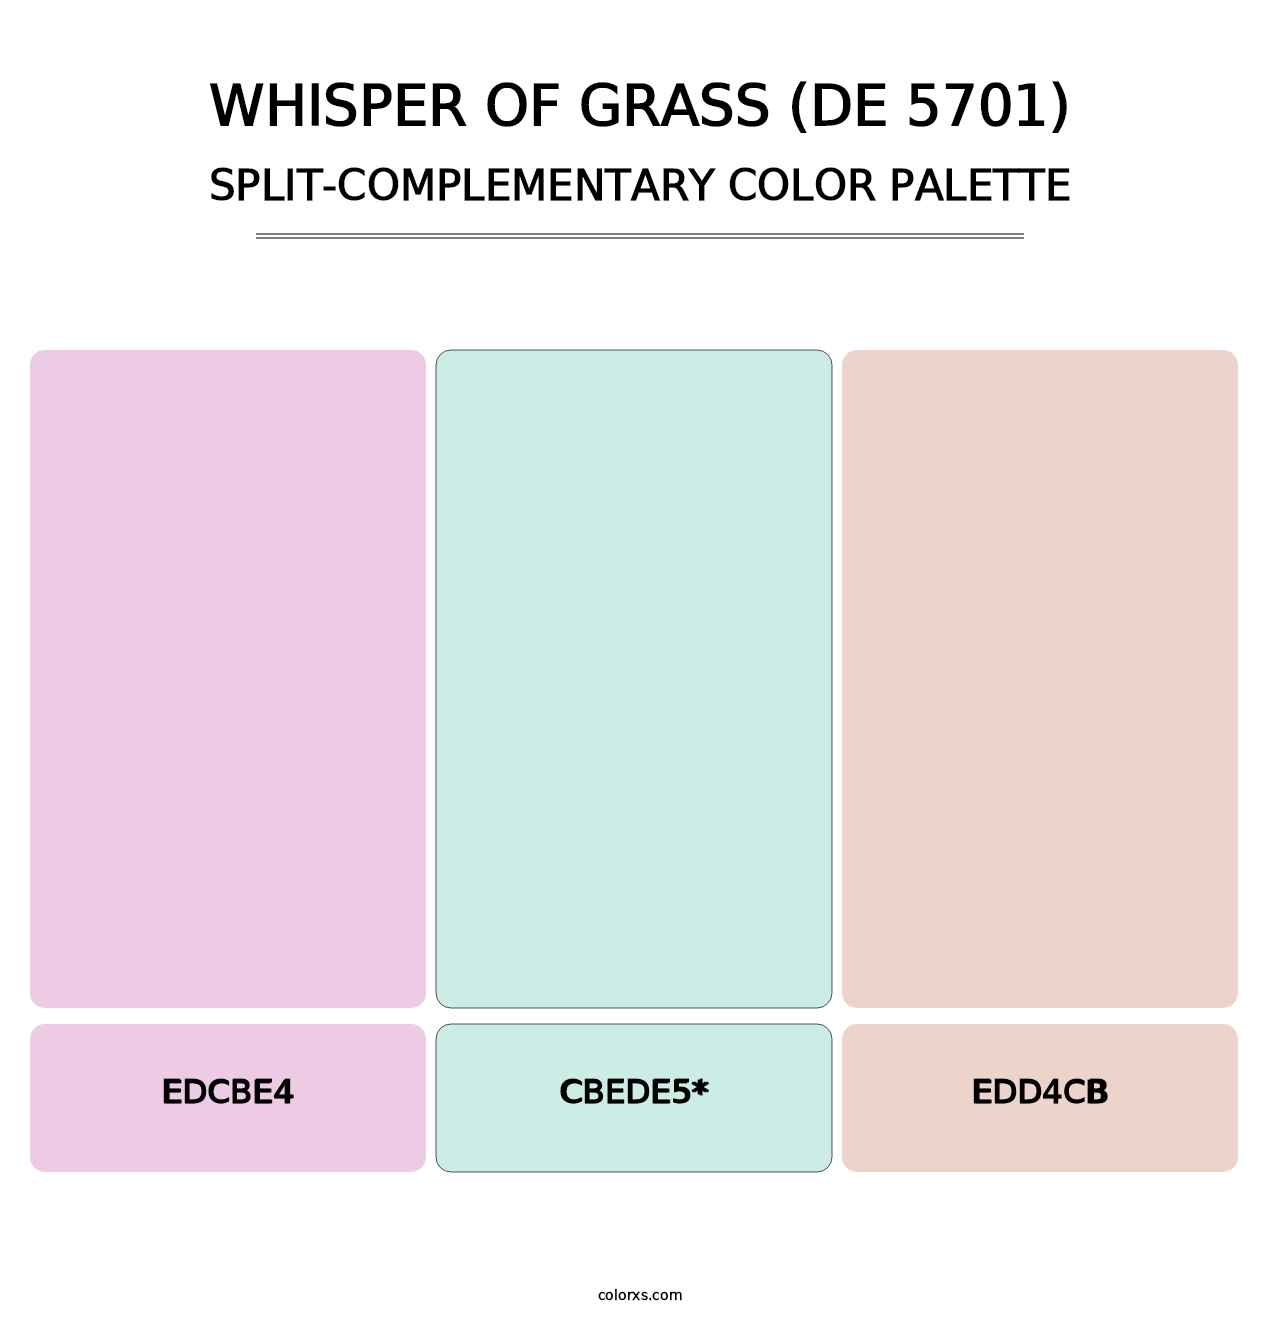 Whisper of Grass (DE 5701) - Split-Complementary Color Palette